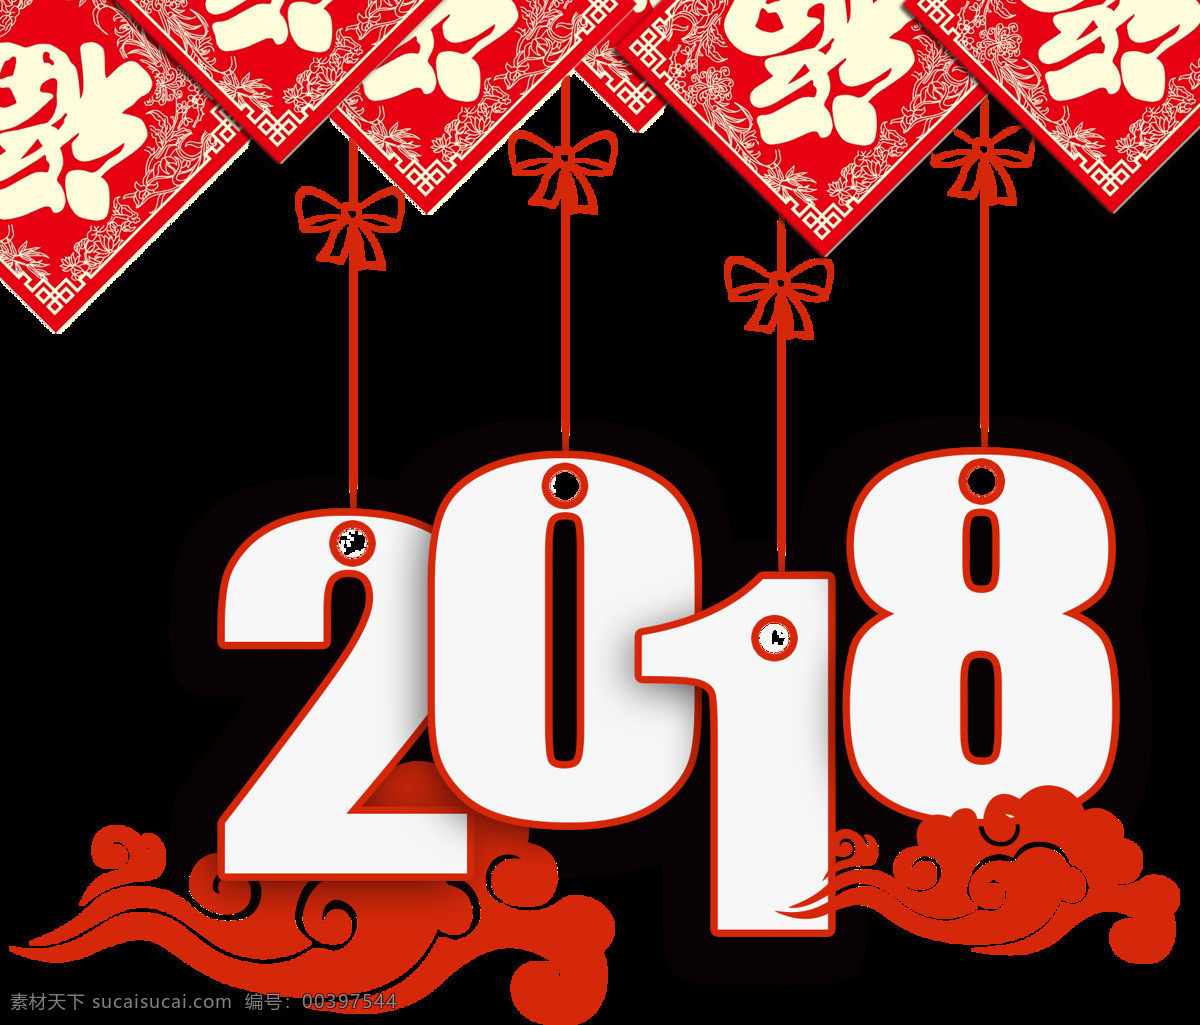 2018 新年 红色 喜庆 透明 合集 免 扣 花朵 剪纸 金黄色 经典 设计元素 贴纸 小狗 形状 圆圈 圆形 装饰图案